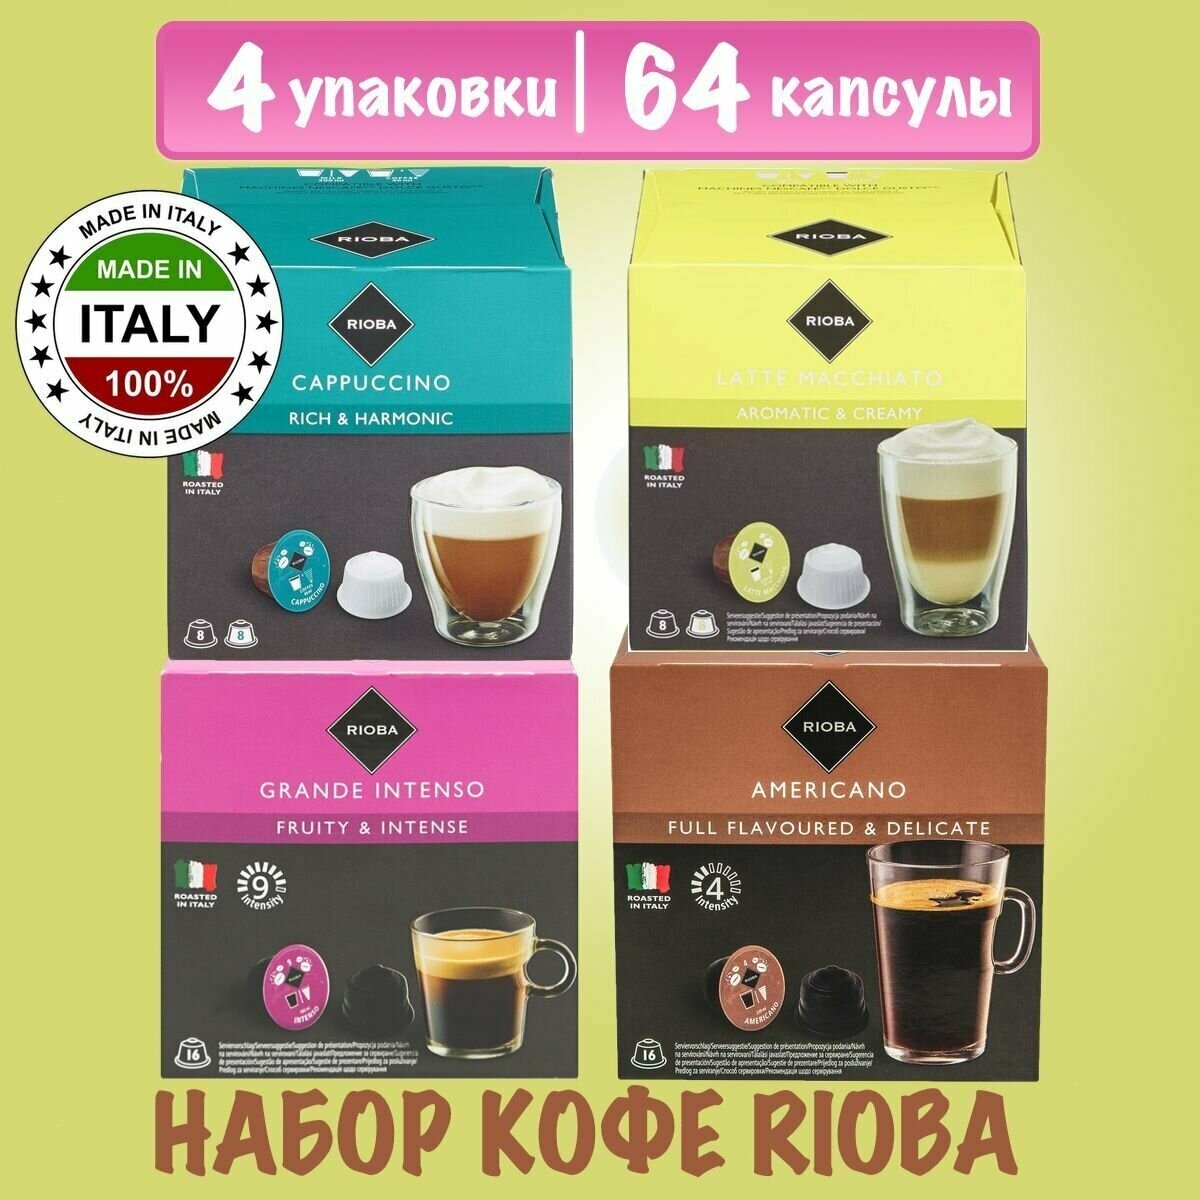 Набор кофе в капсулах Rioba Cappuccino, Latte Macchiato, Americano Dolce Gusto, 4 упаковки - 64 капсул - фотография № 1